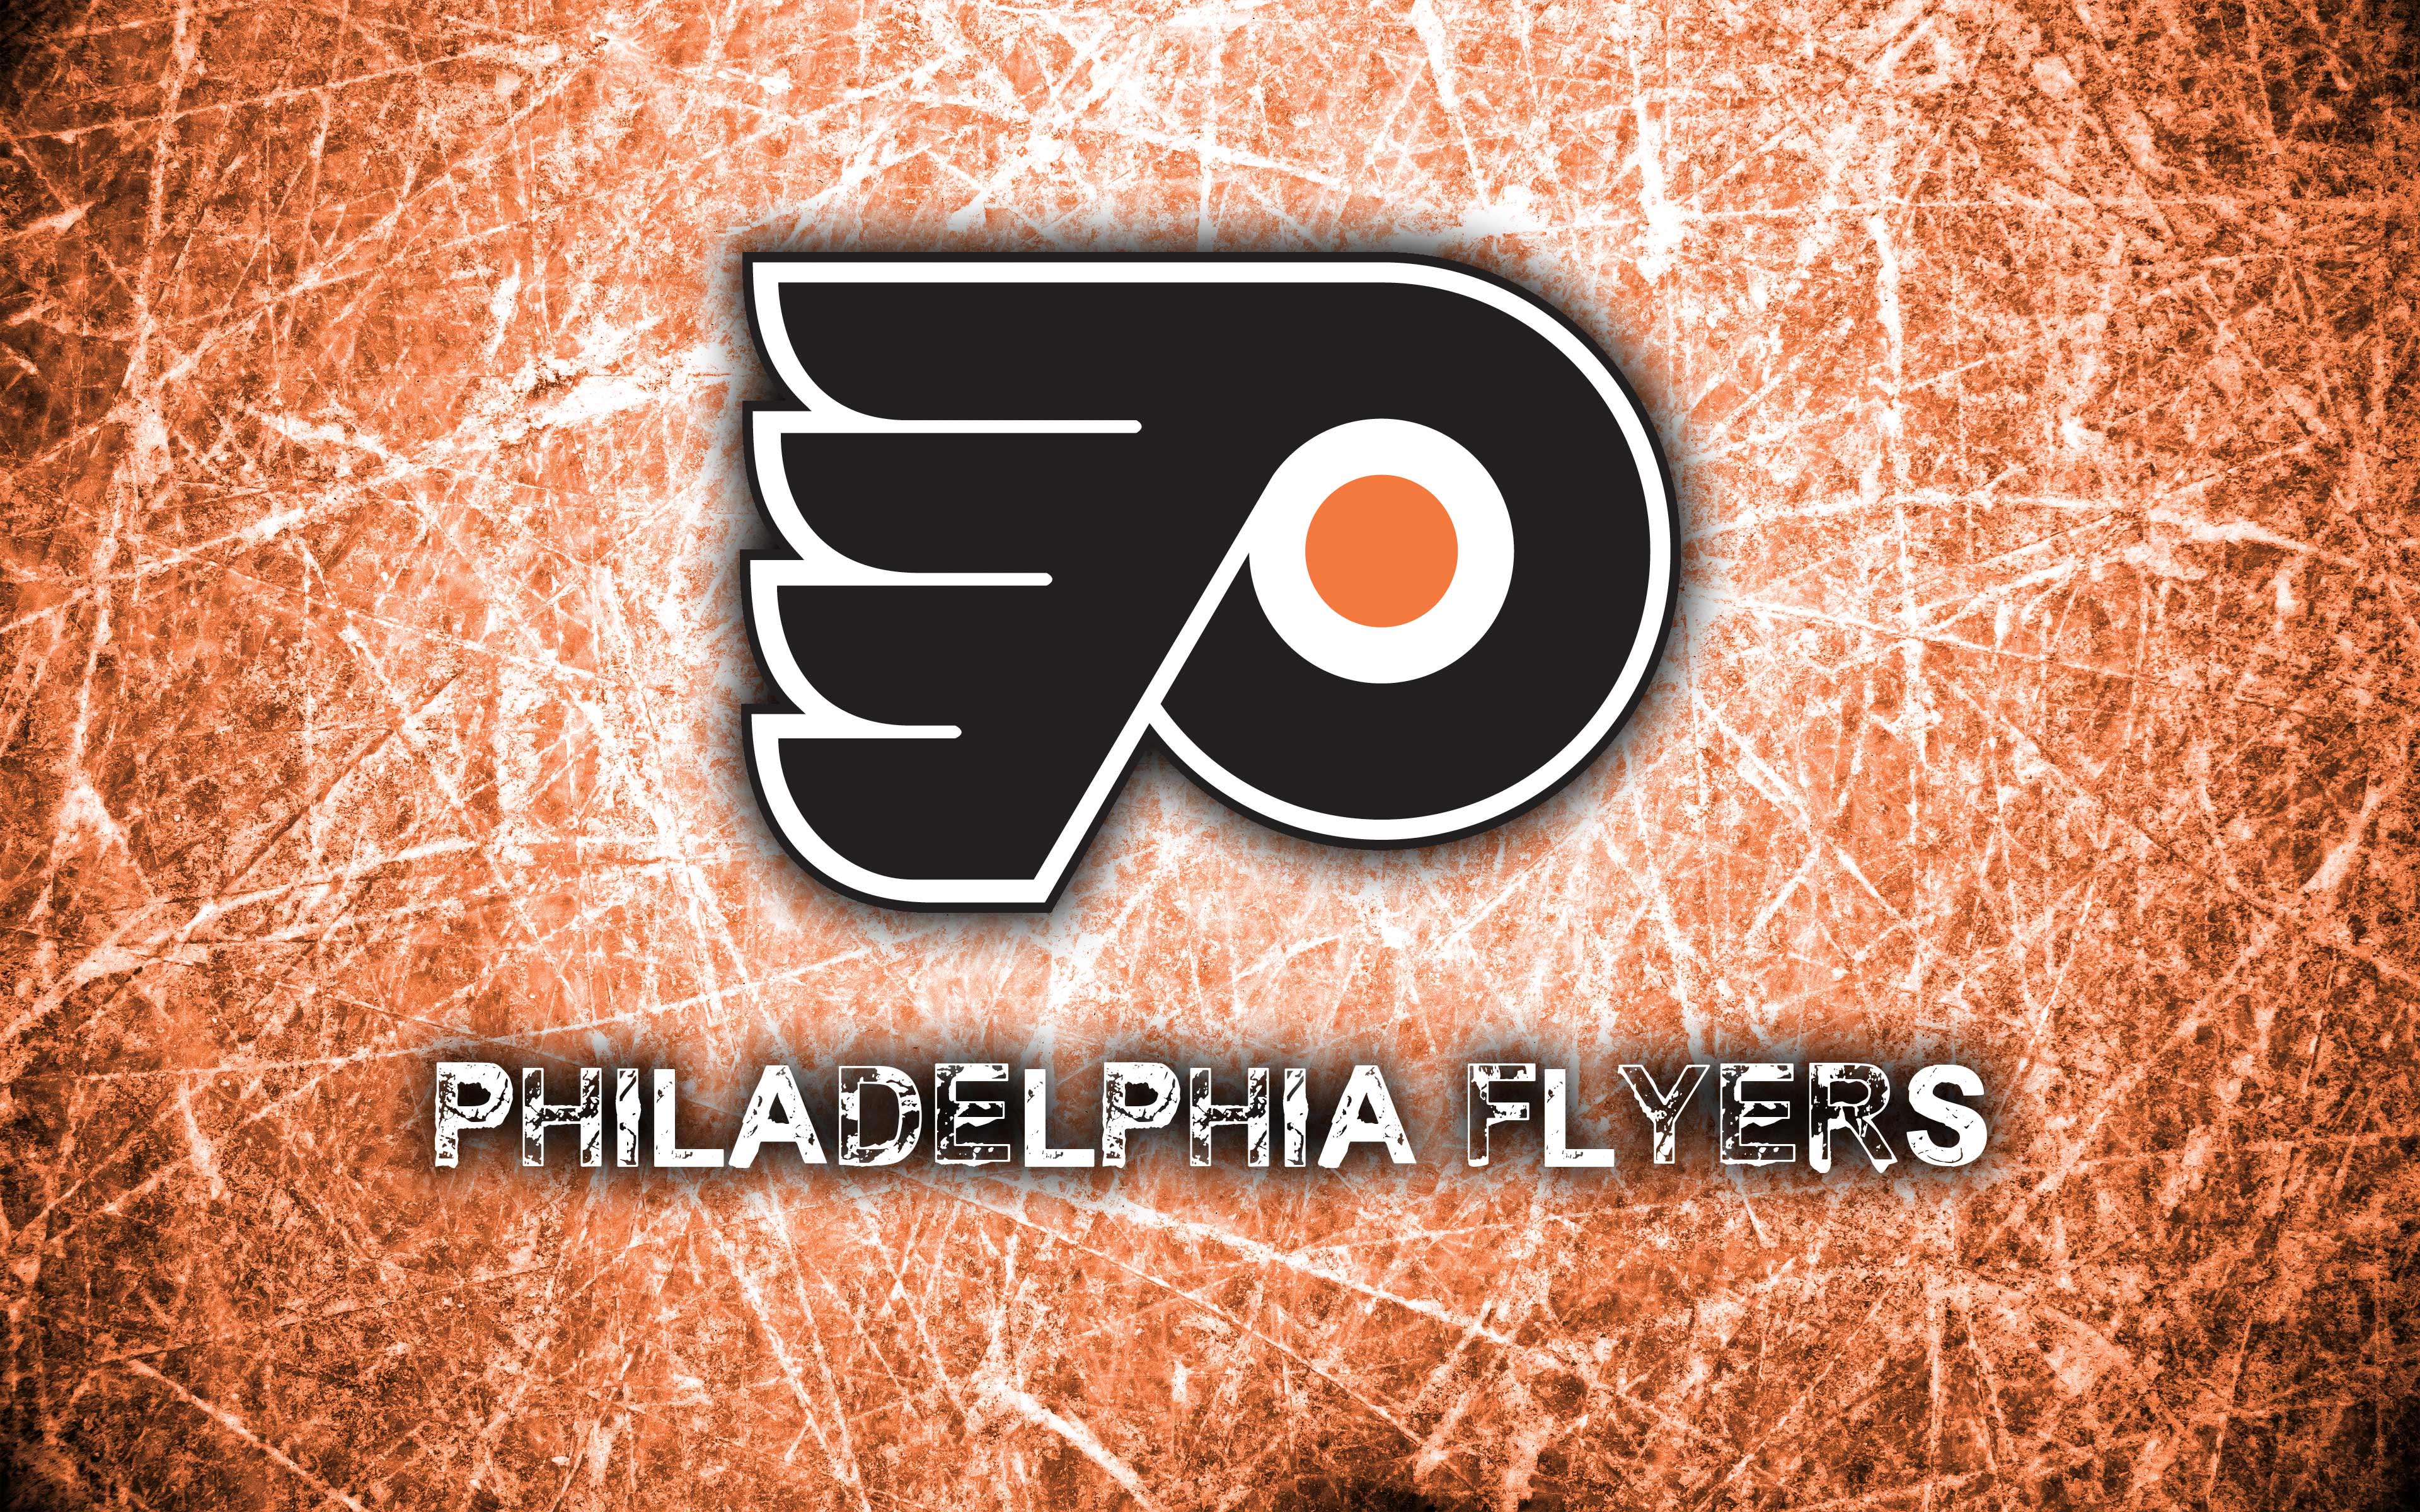 Philadelphia Flyers Schedule